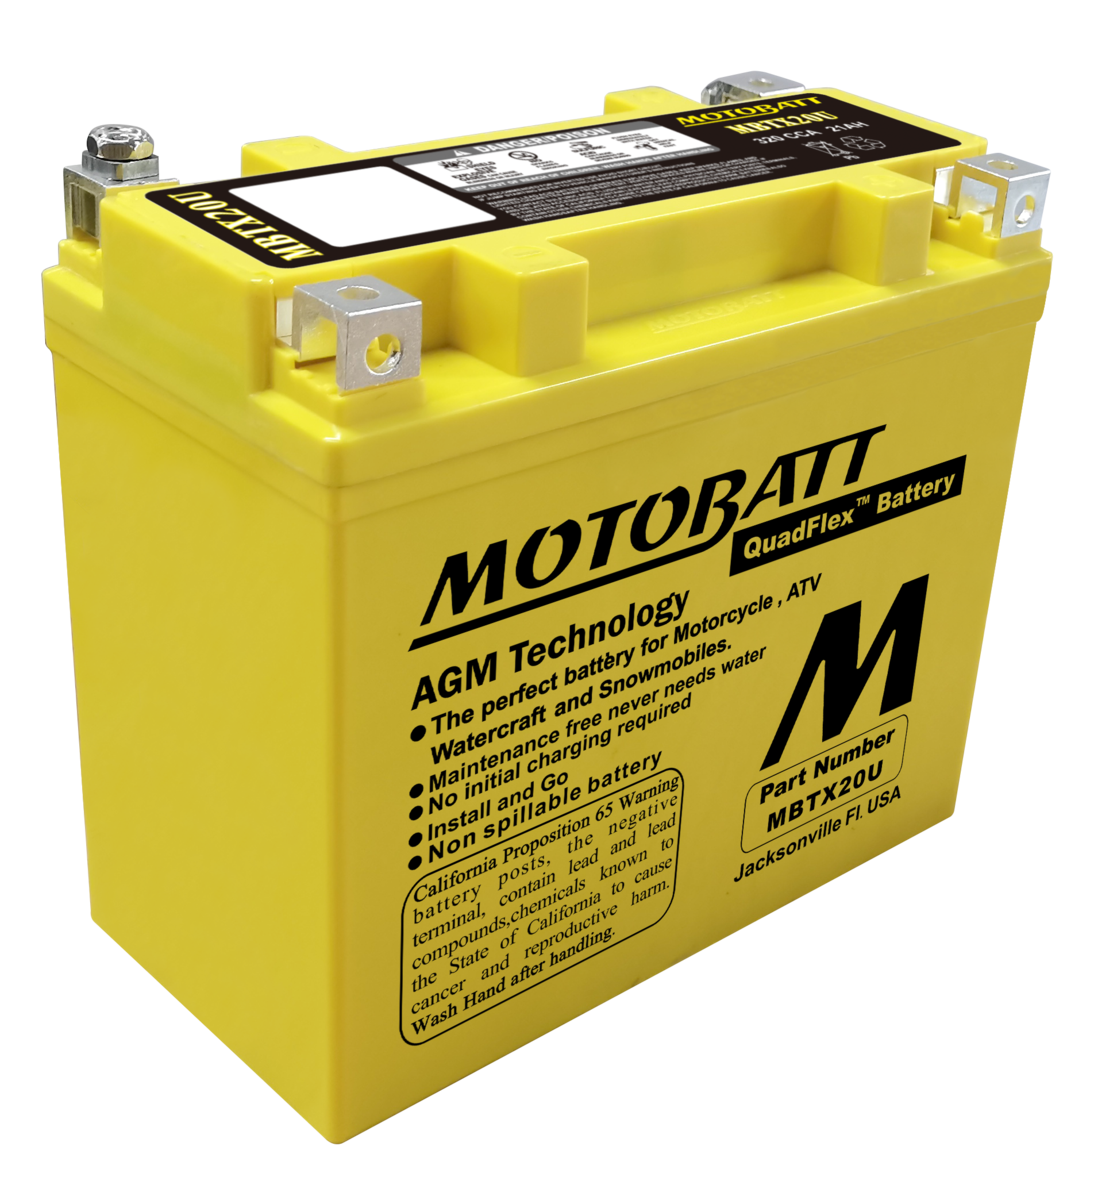 バッテリー MBTX20U モトバット ジェットスキー マリンジェット 初期充電済 即使用可能 メンテナンスフリー MOTOBATT